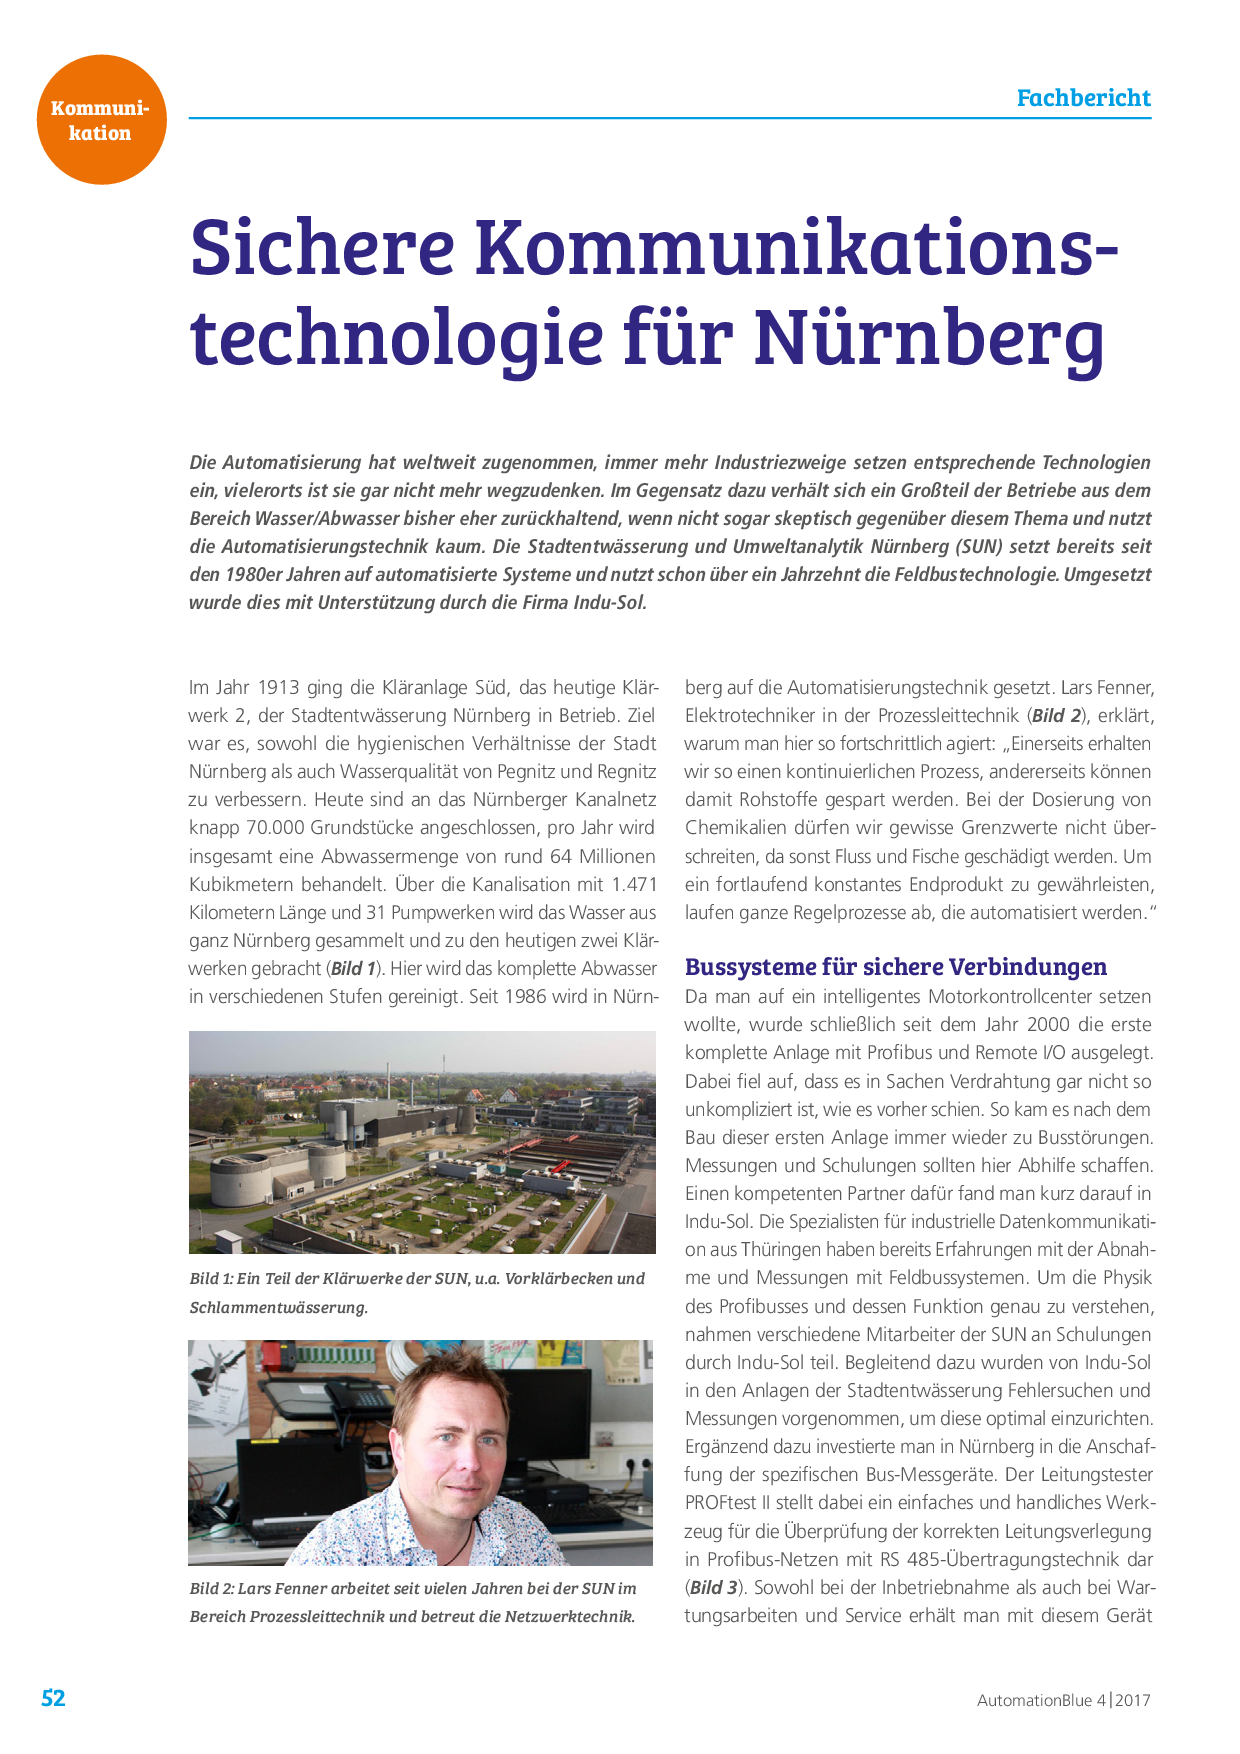 Sichere Kommunikationstechnologie für Nürnberg